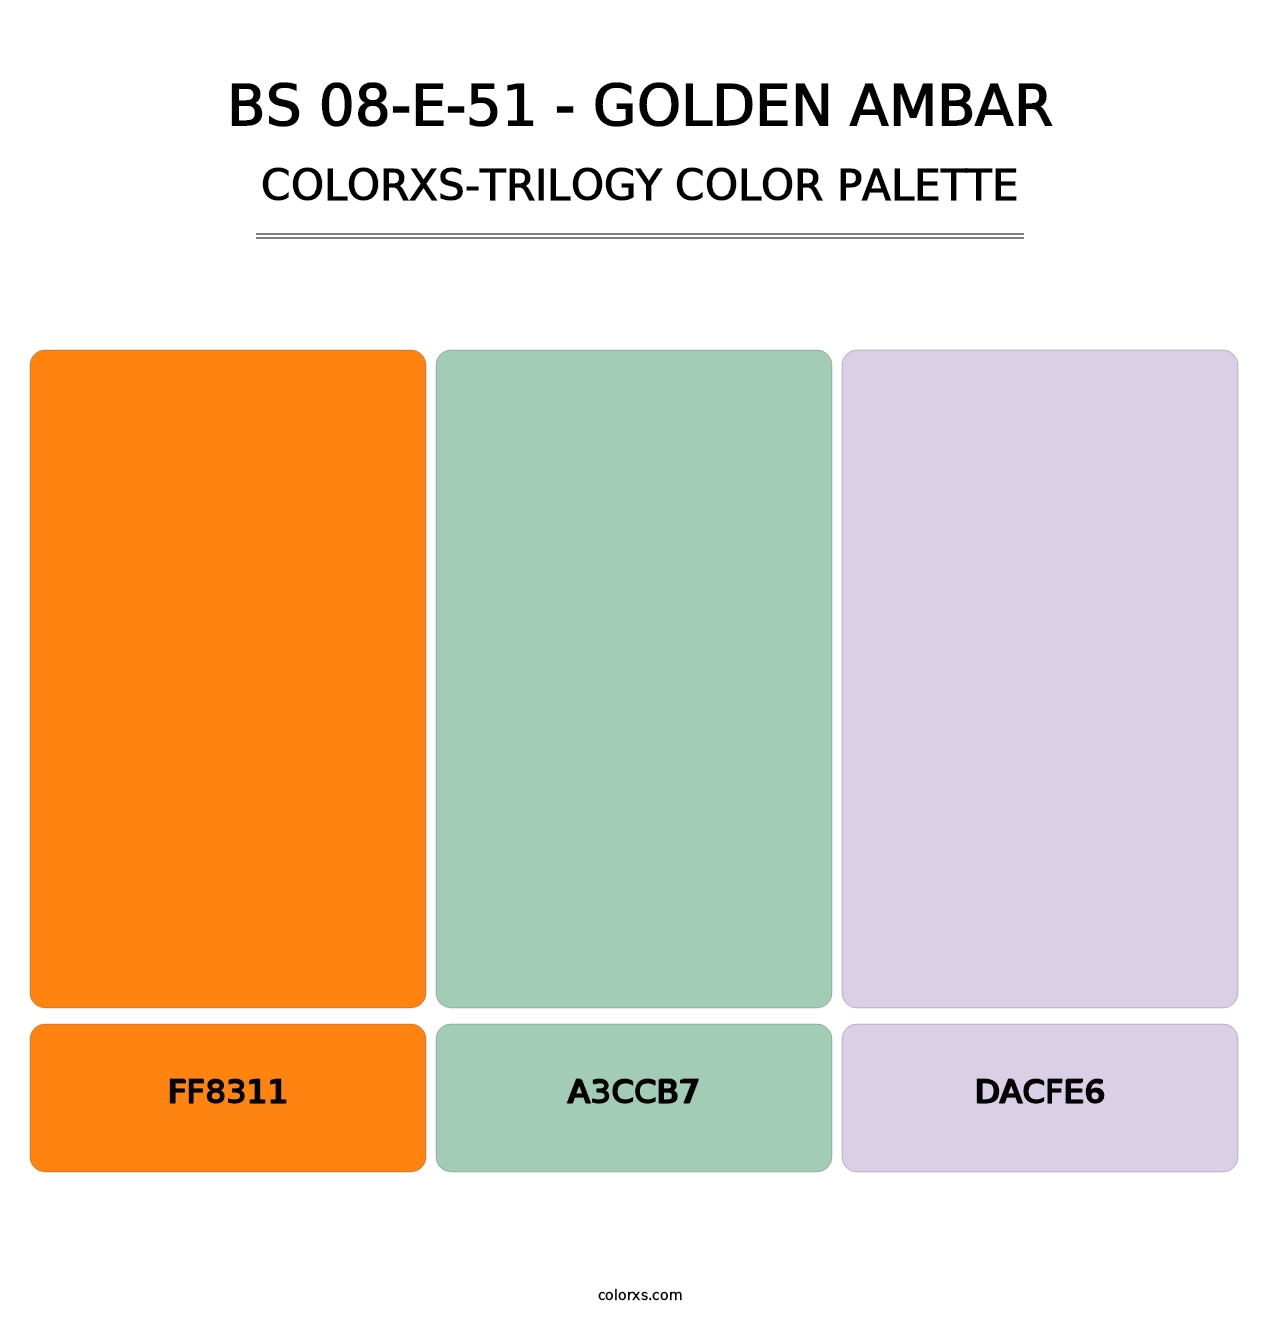 BS 08-E-51 - Golden Ambar - Colorxs Trilogy Palette